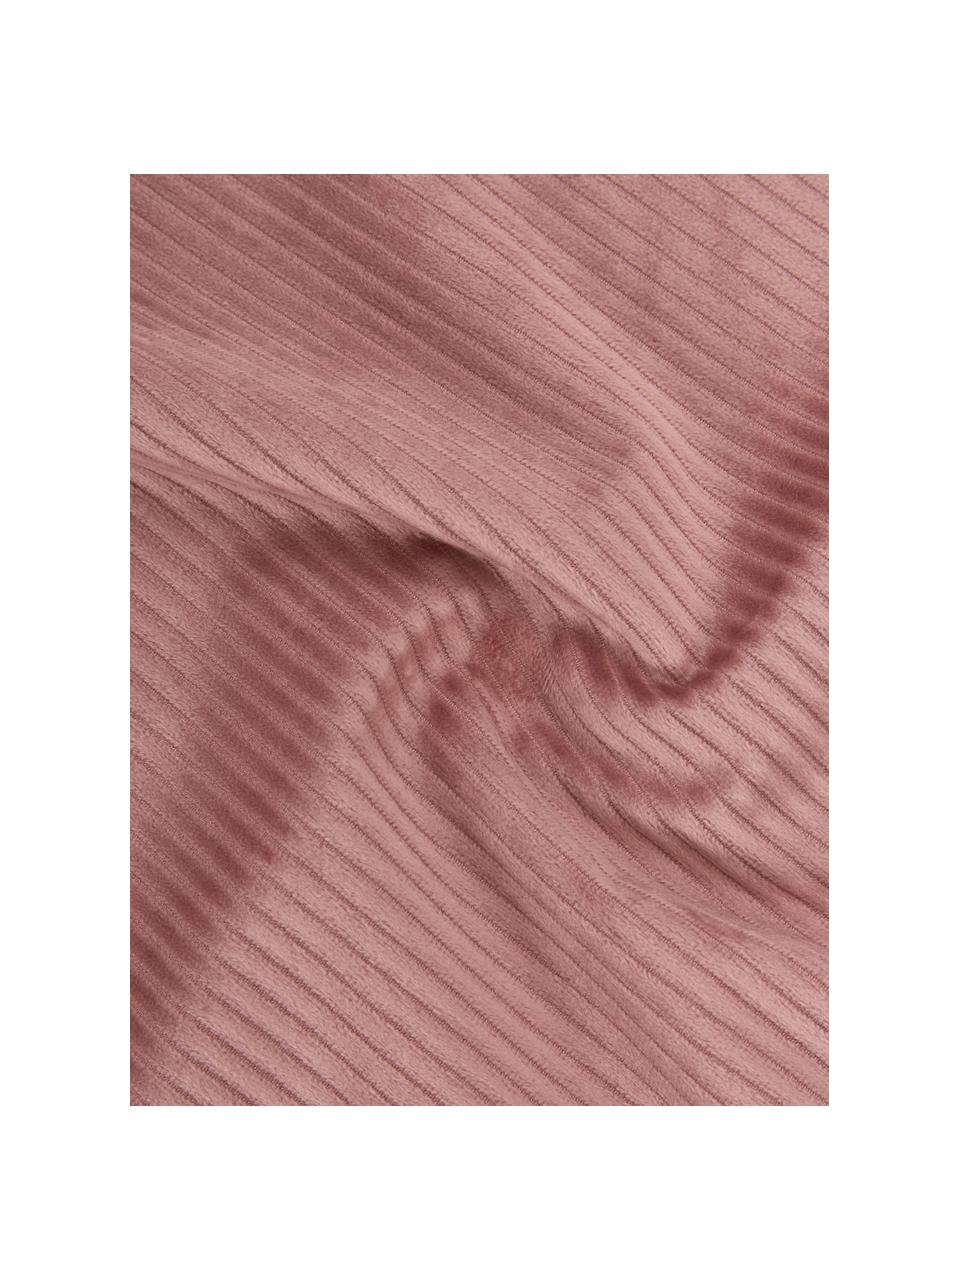 Pościel ze sztruksu Cosy Corduroy, Brudny różowy, 135 x 200 cm + 1 poduszka 80 x 80 cm